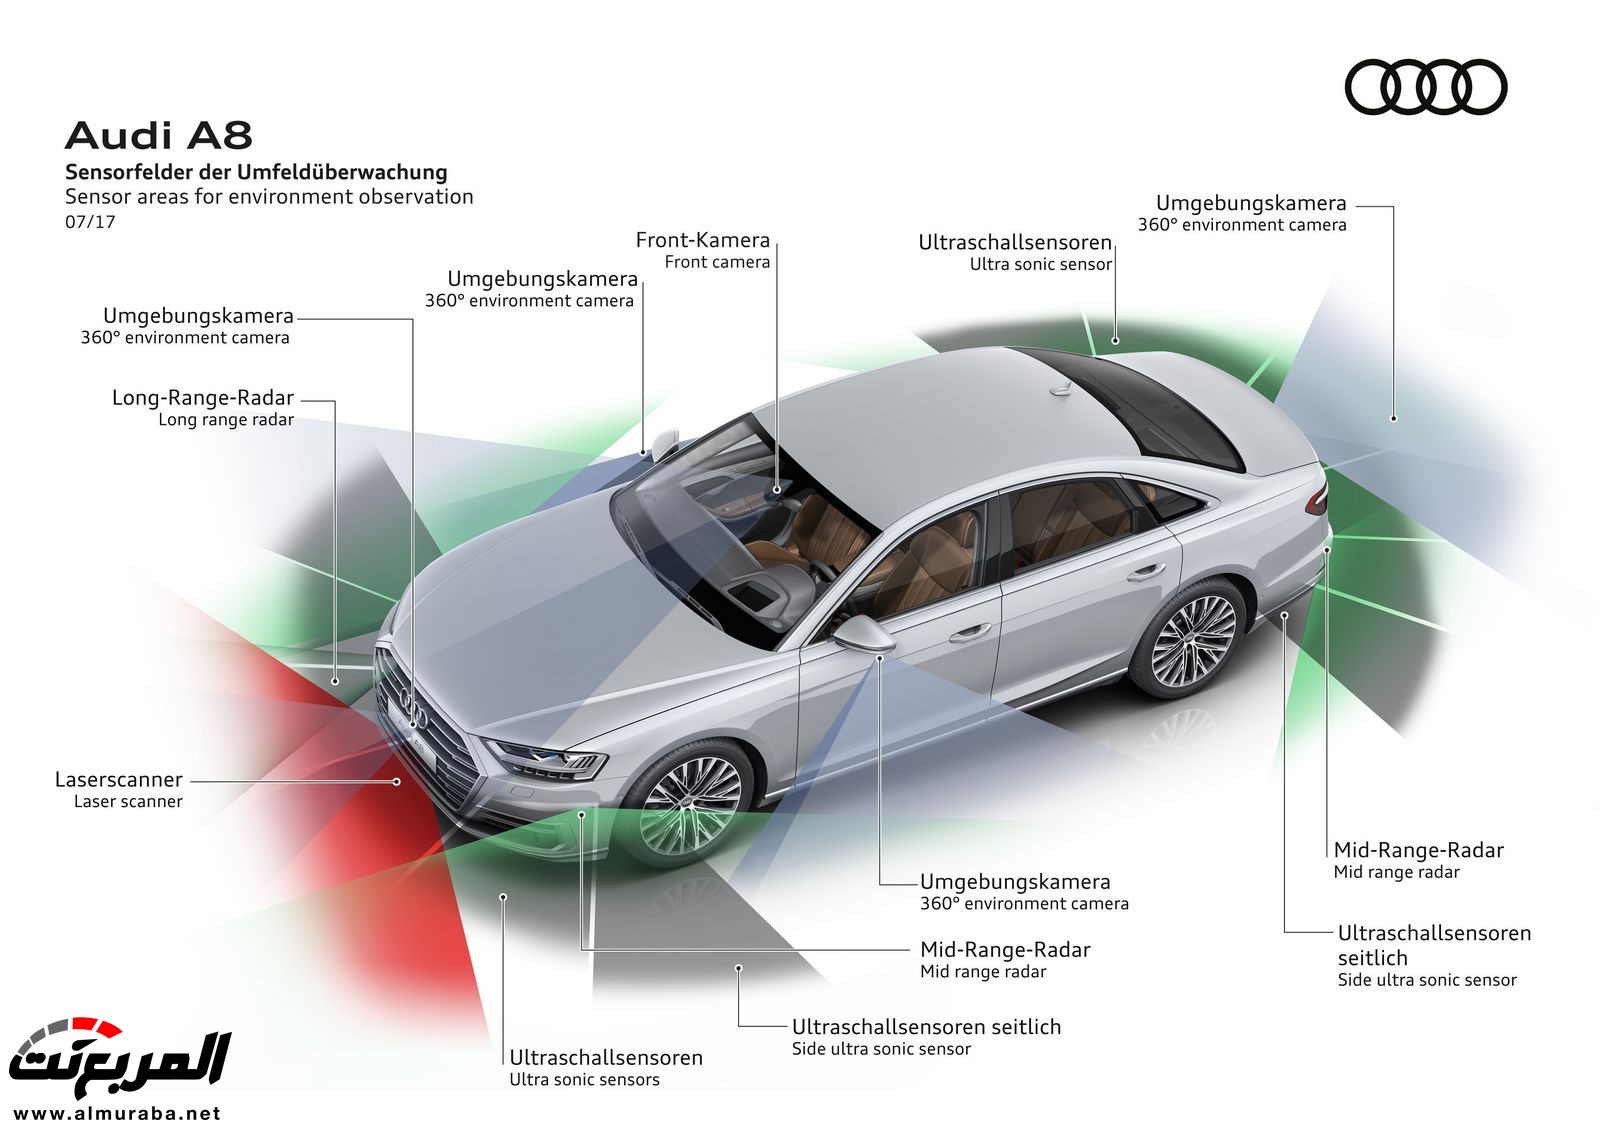 أودي A8 2018 الجديدة كلياً تكشف نفسها بتصميم وتقنيات متطورة "معلومات + 100 صورة" Audi A8 72